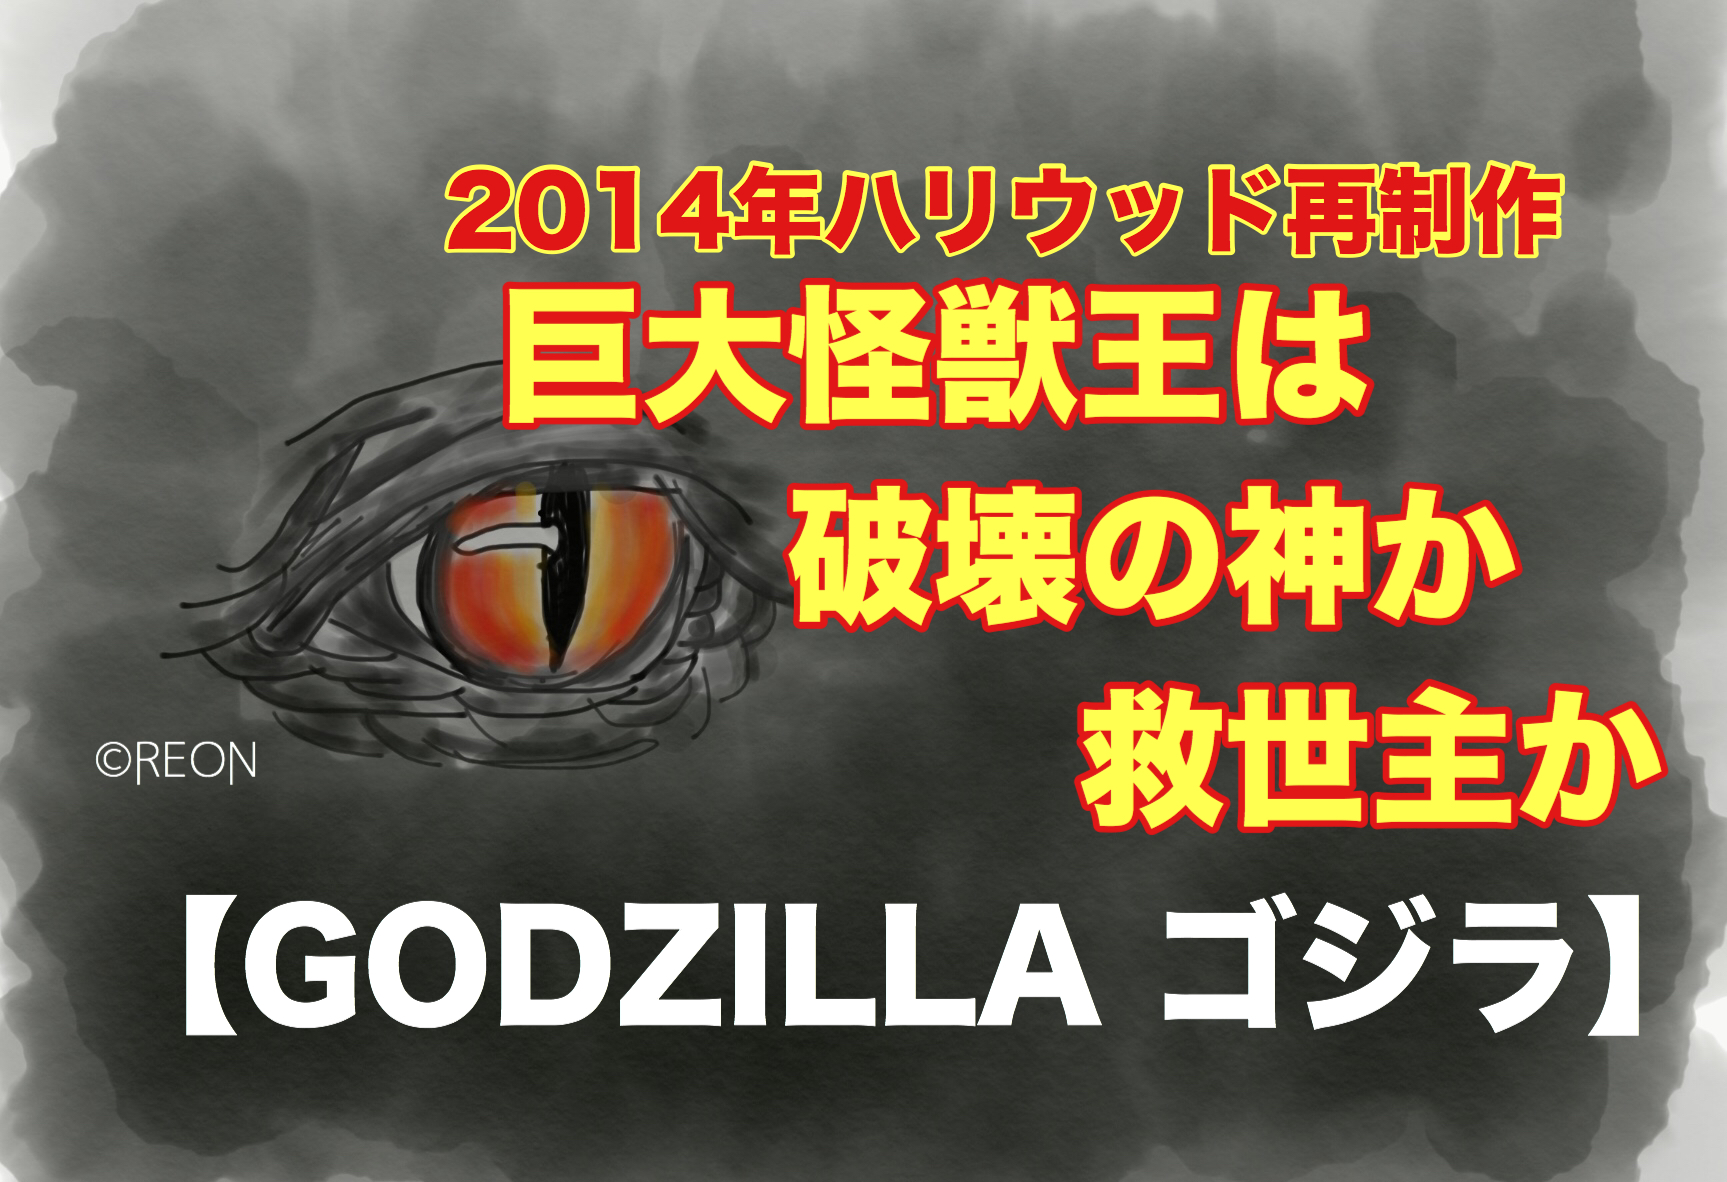 Godzilla ゴジラ 14年ムートーとの死闘の行方は れおんの言霊